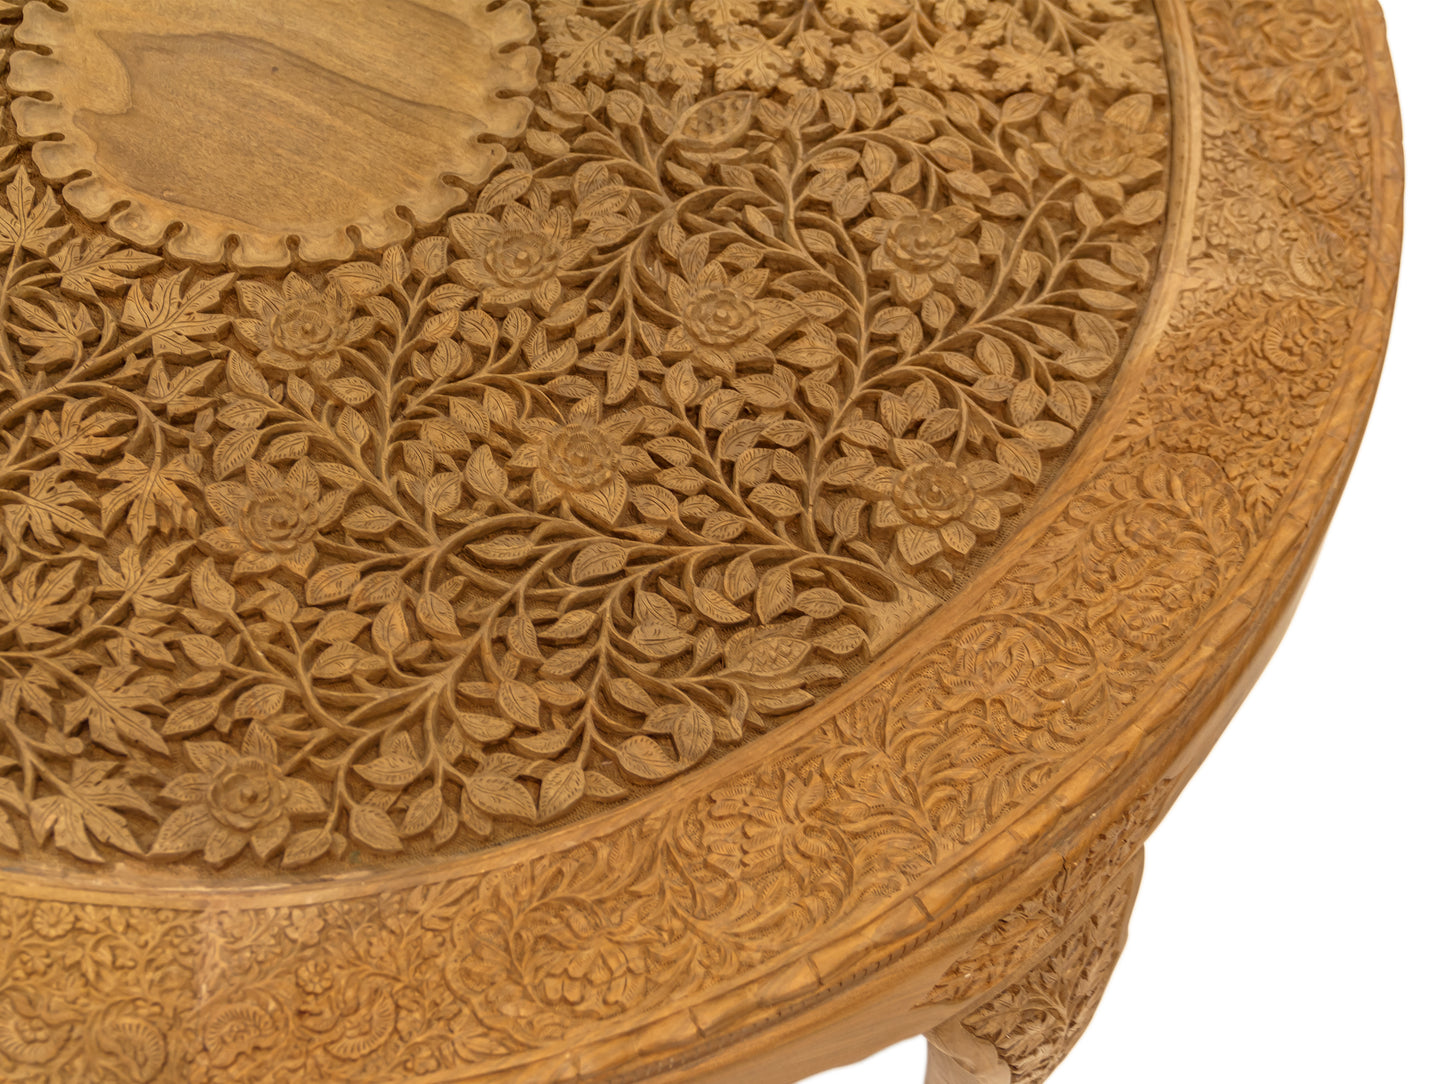 Handmade Walnut Table "4 seasons" product image #29720065114282